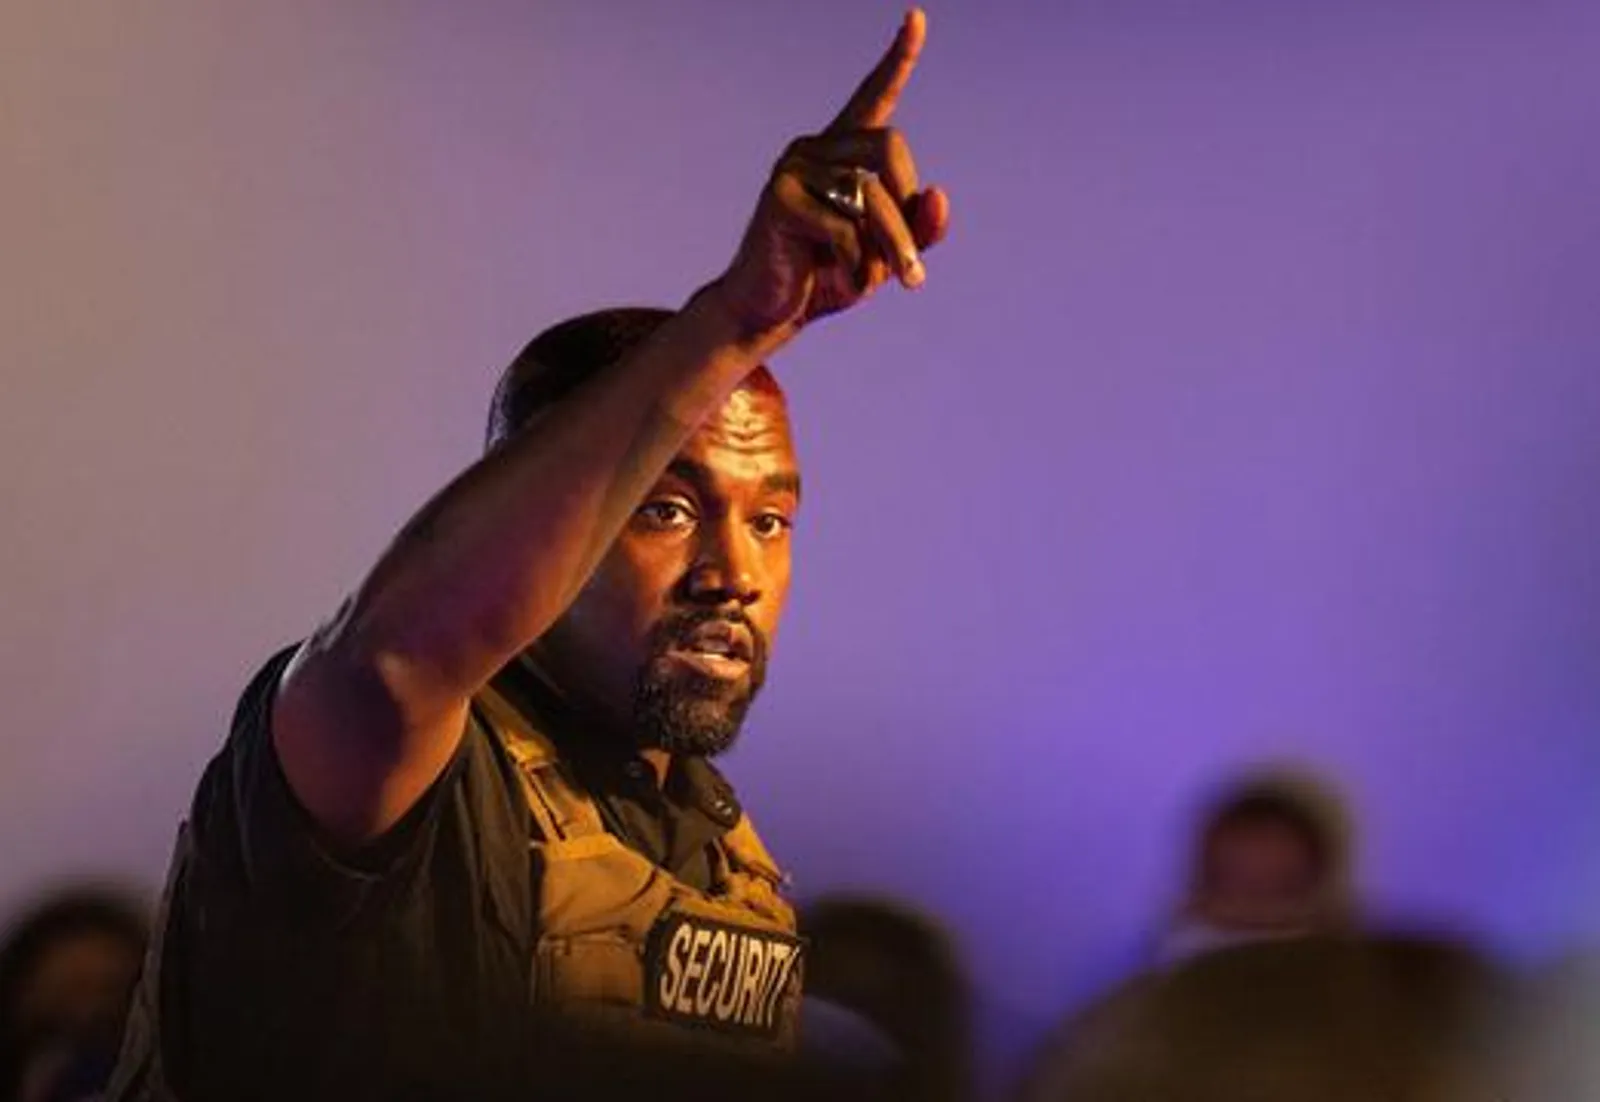 Geger Kanye West Mengaku Nabi Musa Baru dan Kencingi Piala Grammy